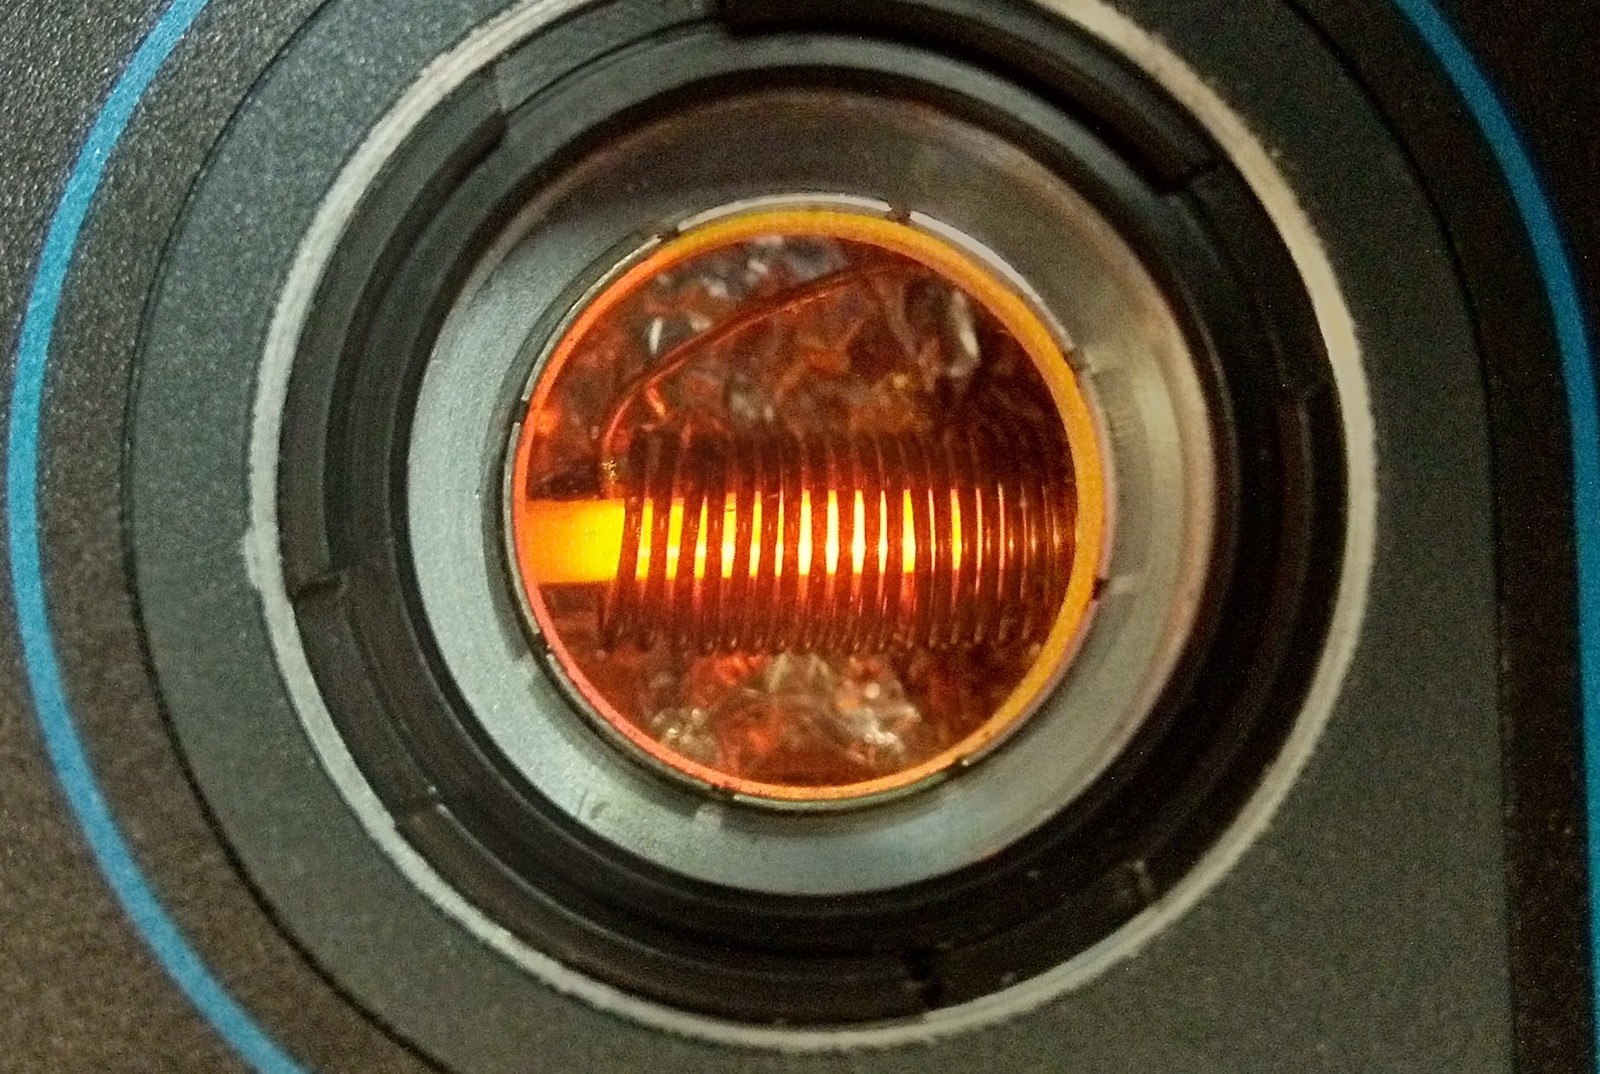 Kryształ używany do przechowywania qubitów fotonicznych i oświetlany laserem w kriostacie &#8211; przyrządzie służącym do uzyskiwania temperatur kriogenicznych
